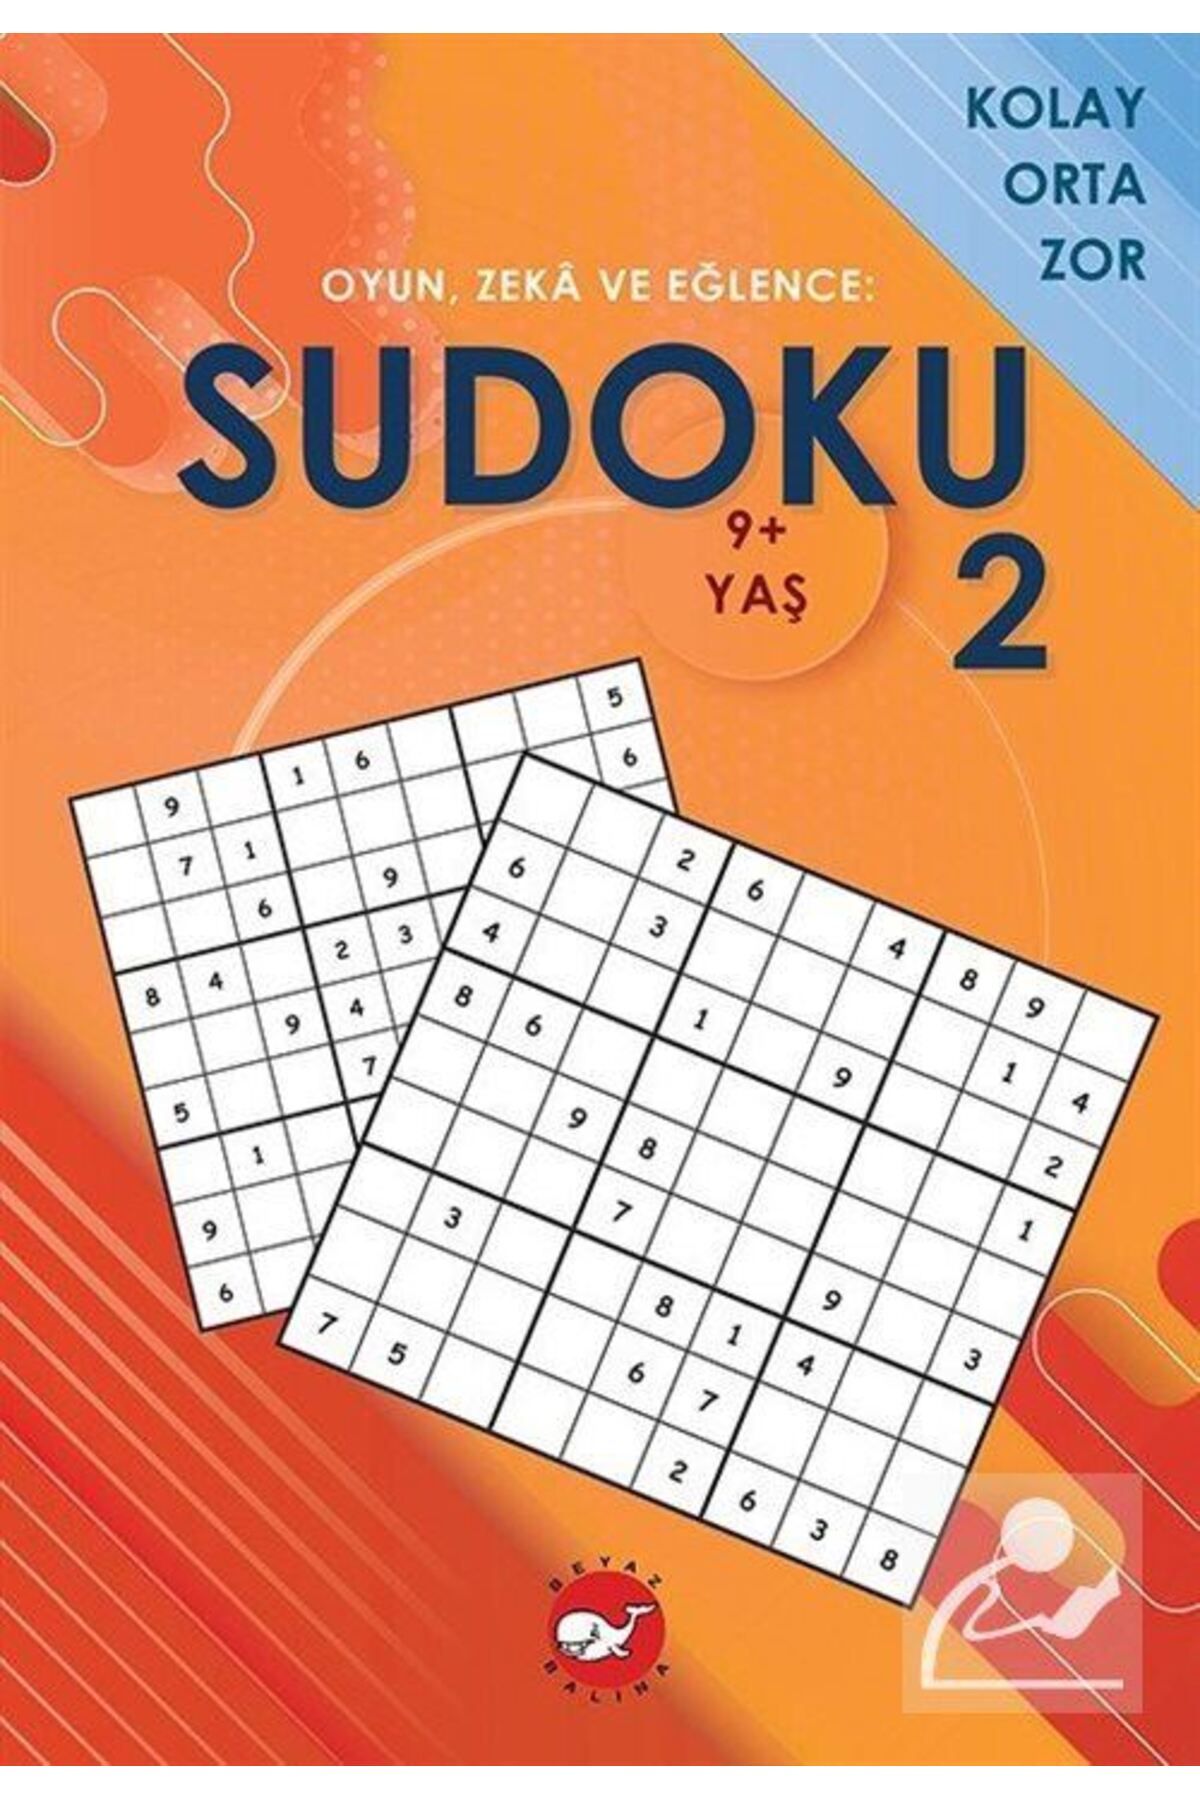 Beyaz Balina Yayınları Oyun, Zeka Ve Eğlence: Sudoku 2 Kolay, Orta, Zor (9+ Yaş)